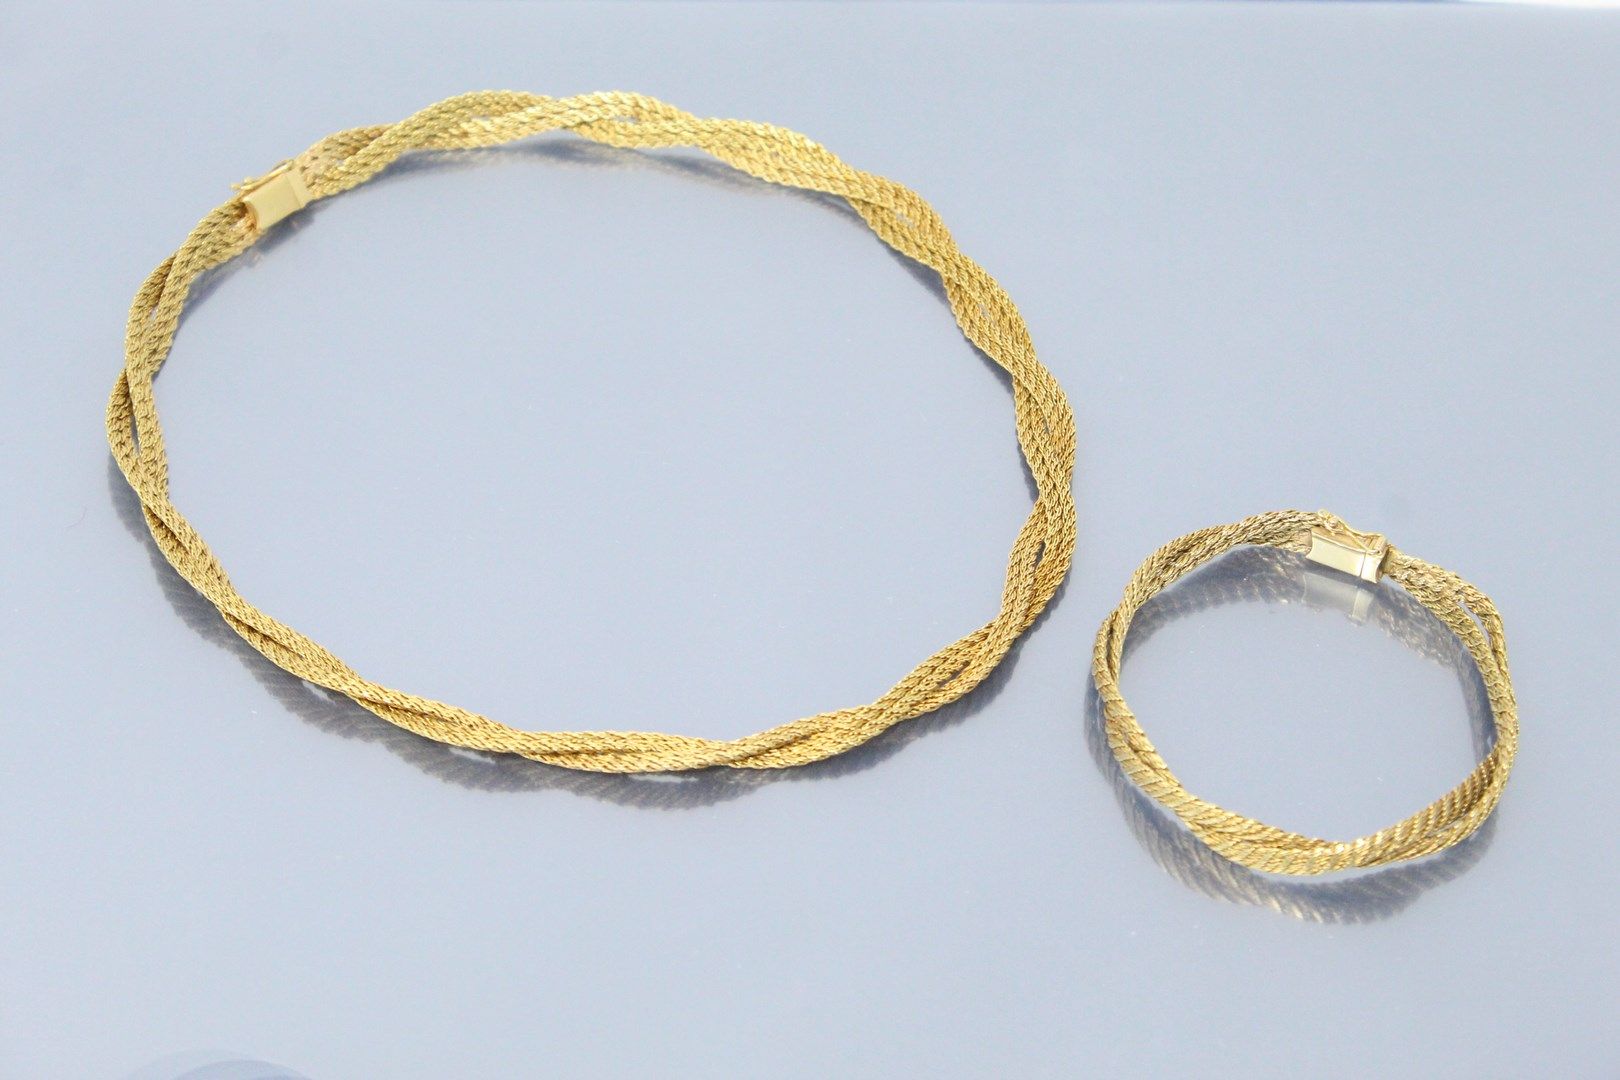 Null 18K(750)黄金半镶编织网，包括一条项链和一个手镯。

有大师的印记。摩纳哥公爵的豪华珠宝。

鹰头标志。

颈部尺寸：41厘米。- 手腕尺寸：1&hellip;